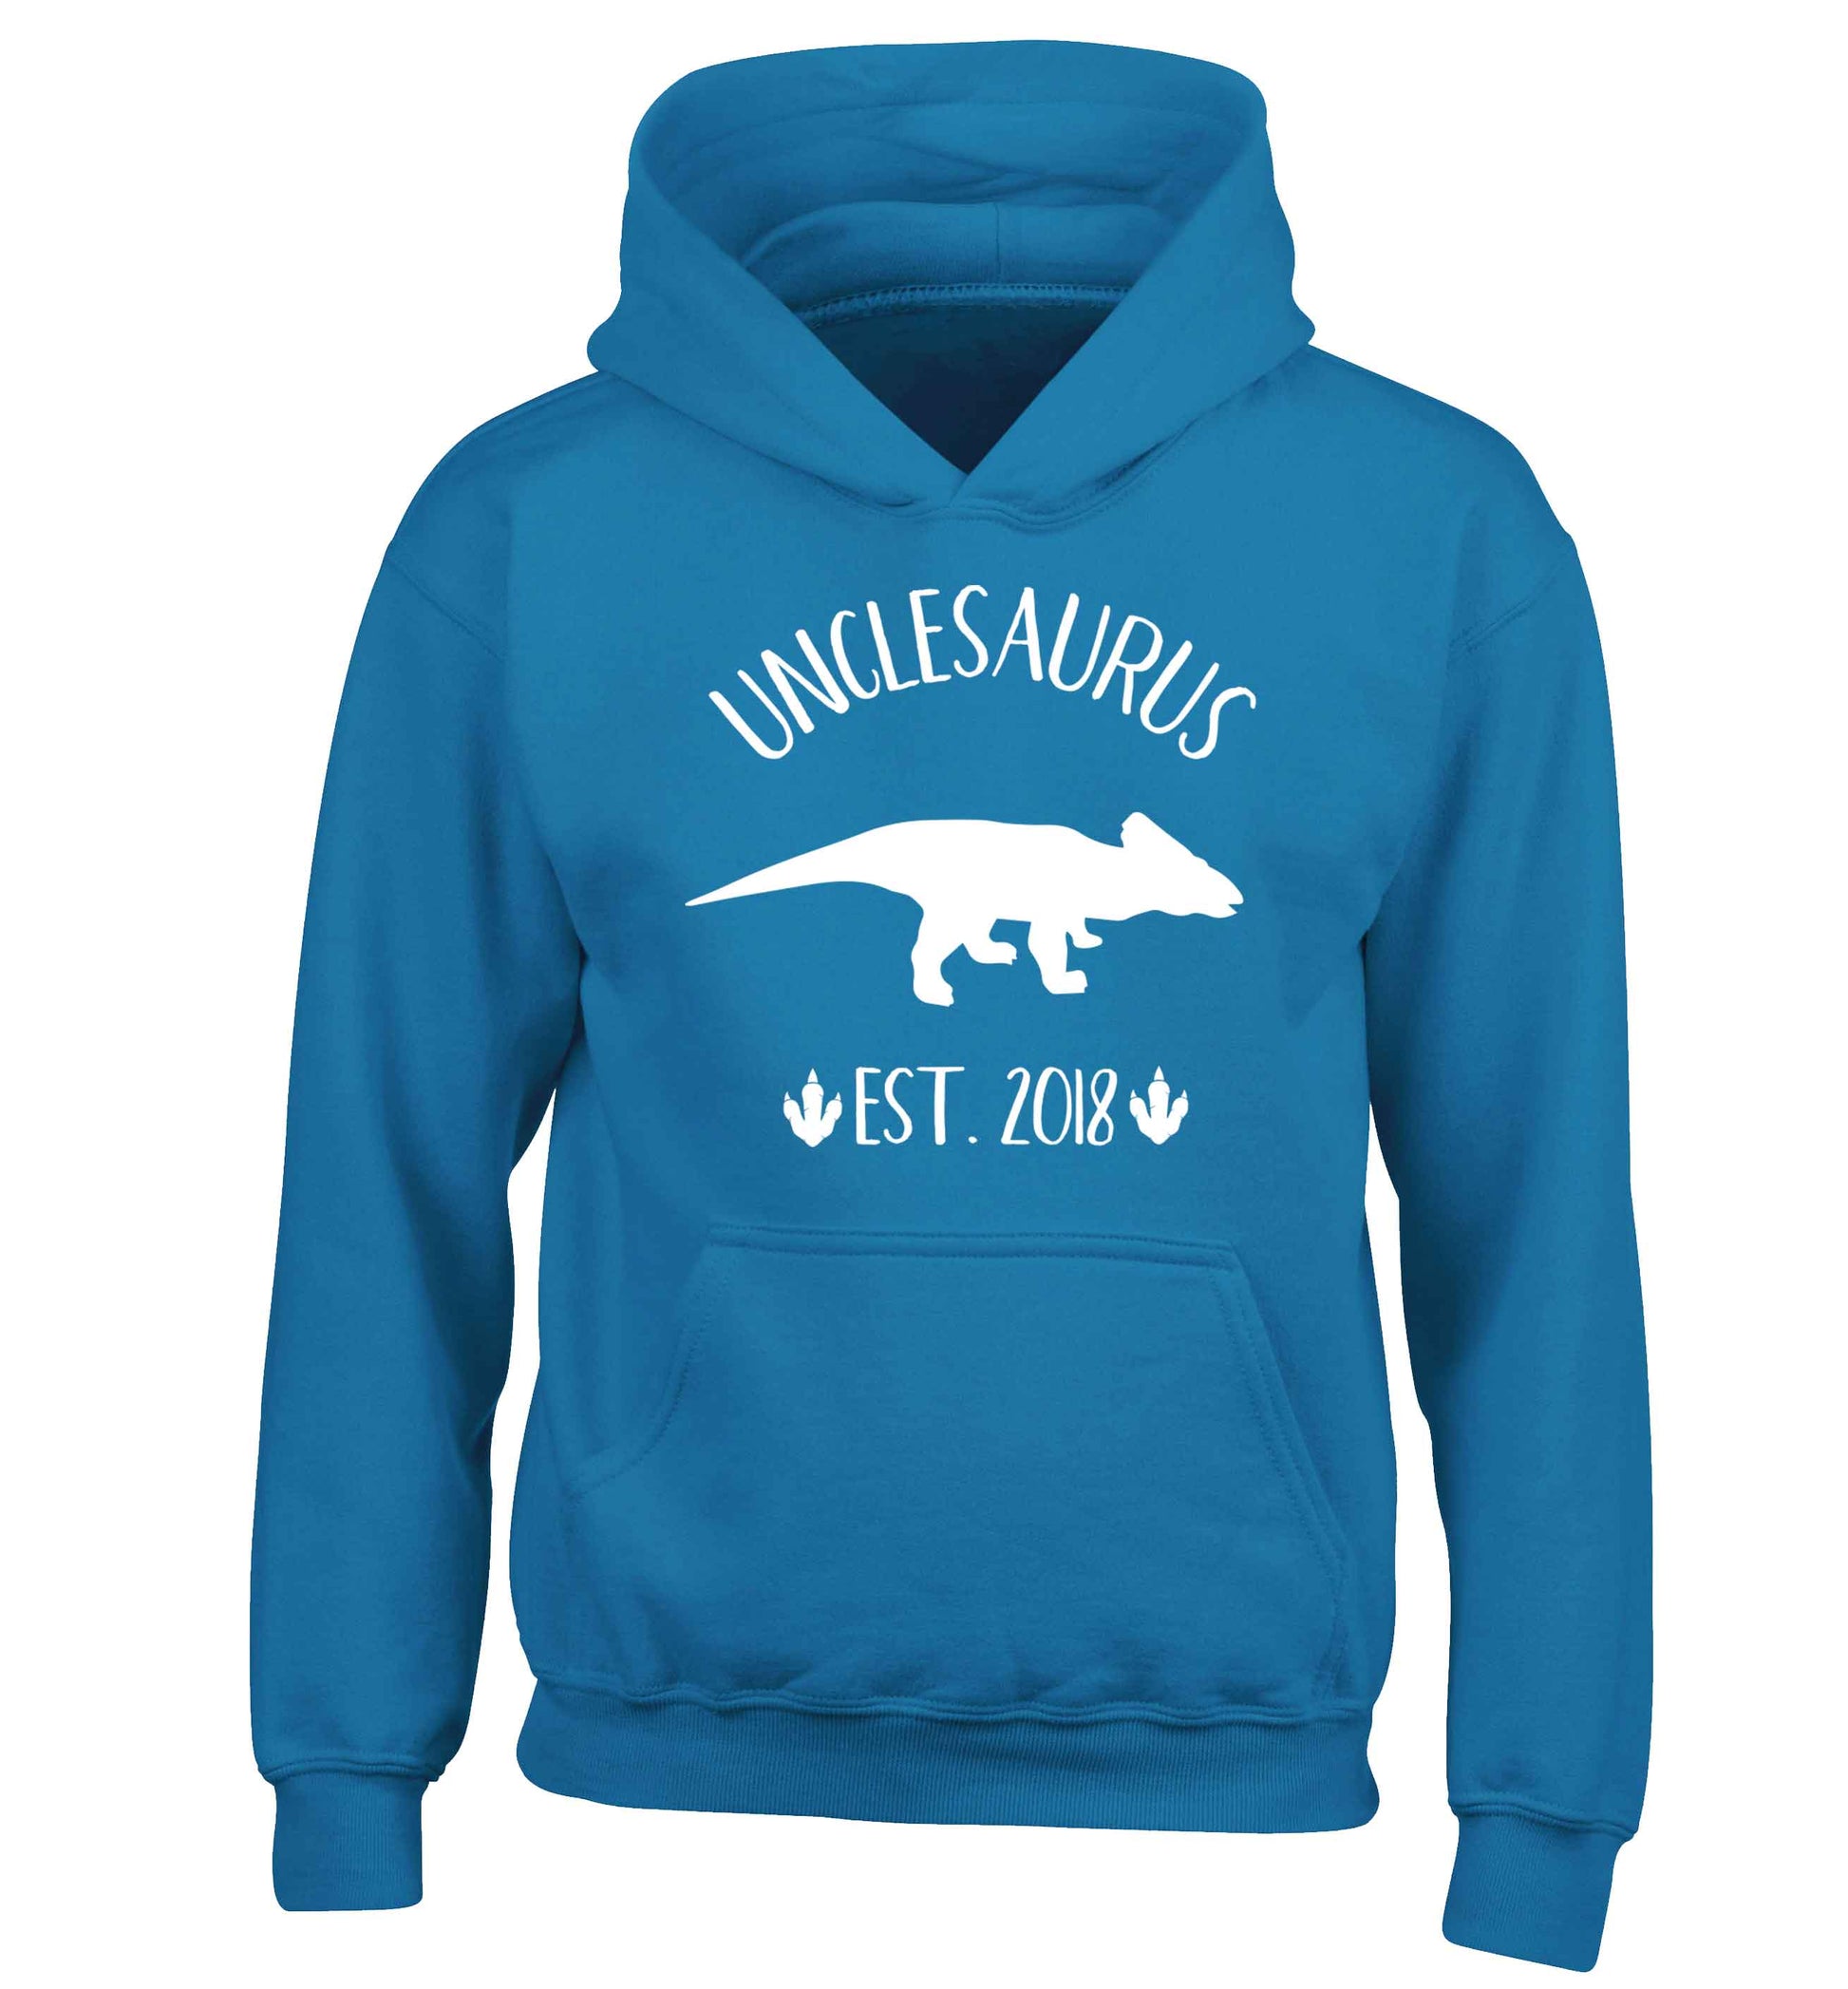 Personalised unclesaurus since (custom date) children's blue hoodie 12-13 Years